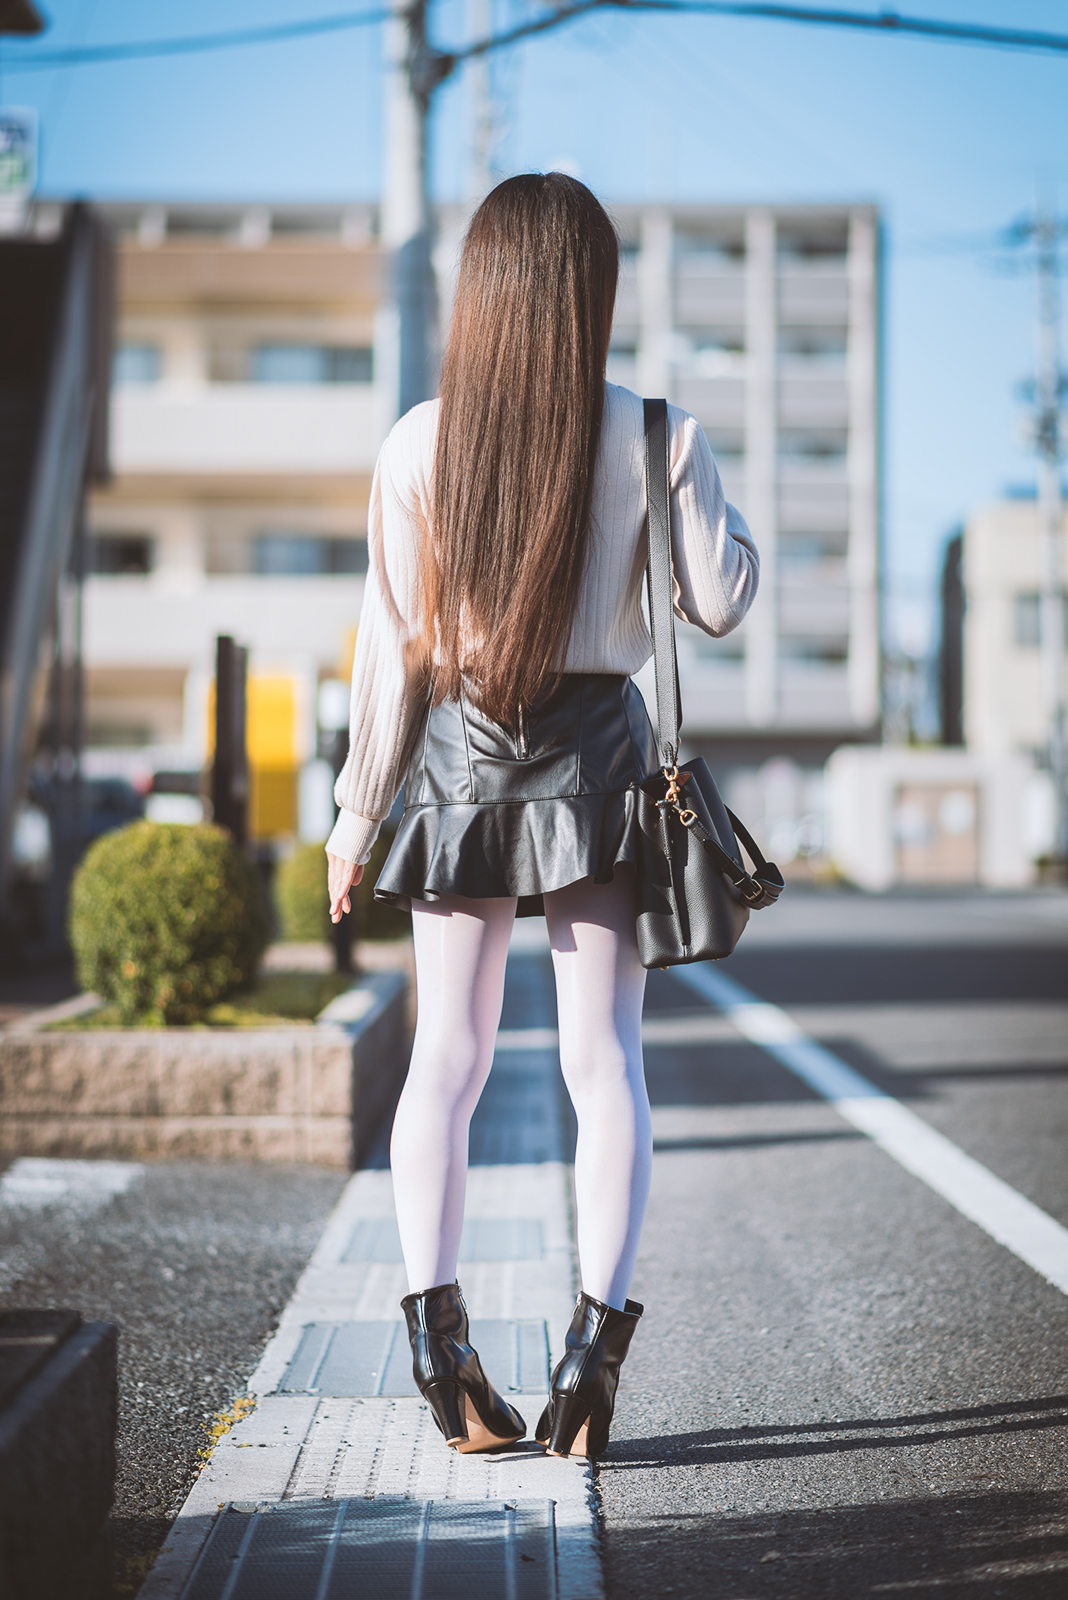 すちうる on Twitter: "フェイクレザーのミニスカートに光沢白色ストッキングを着用して街中に佇んでいるときのセルフポートレートです